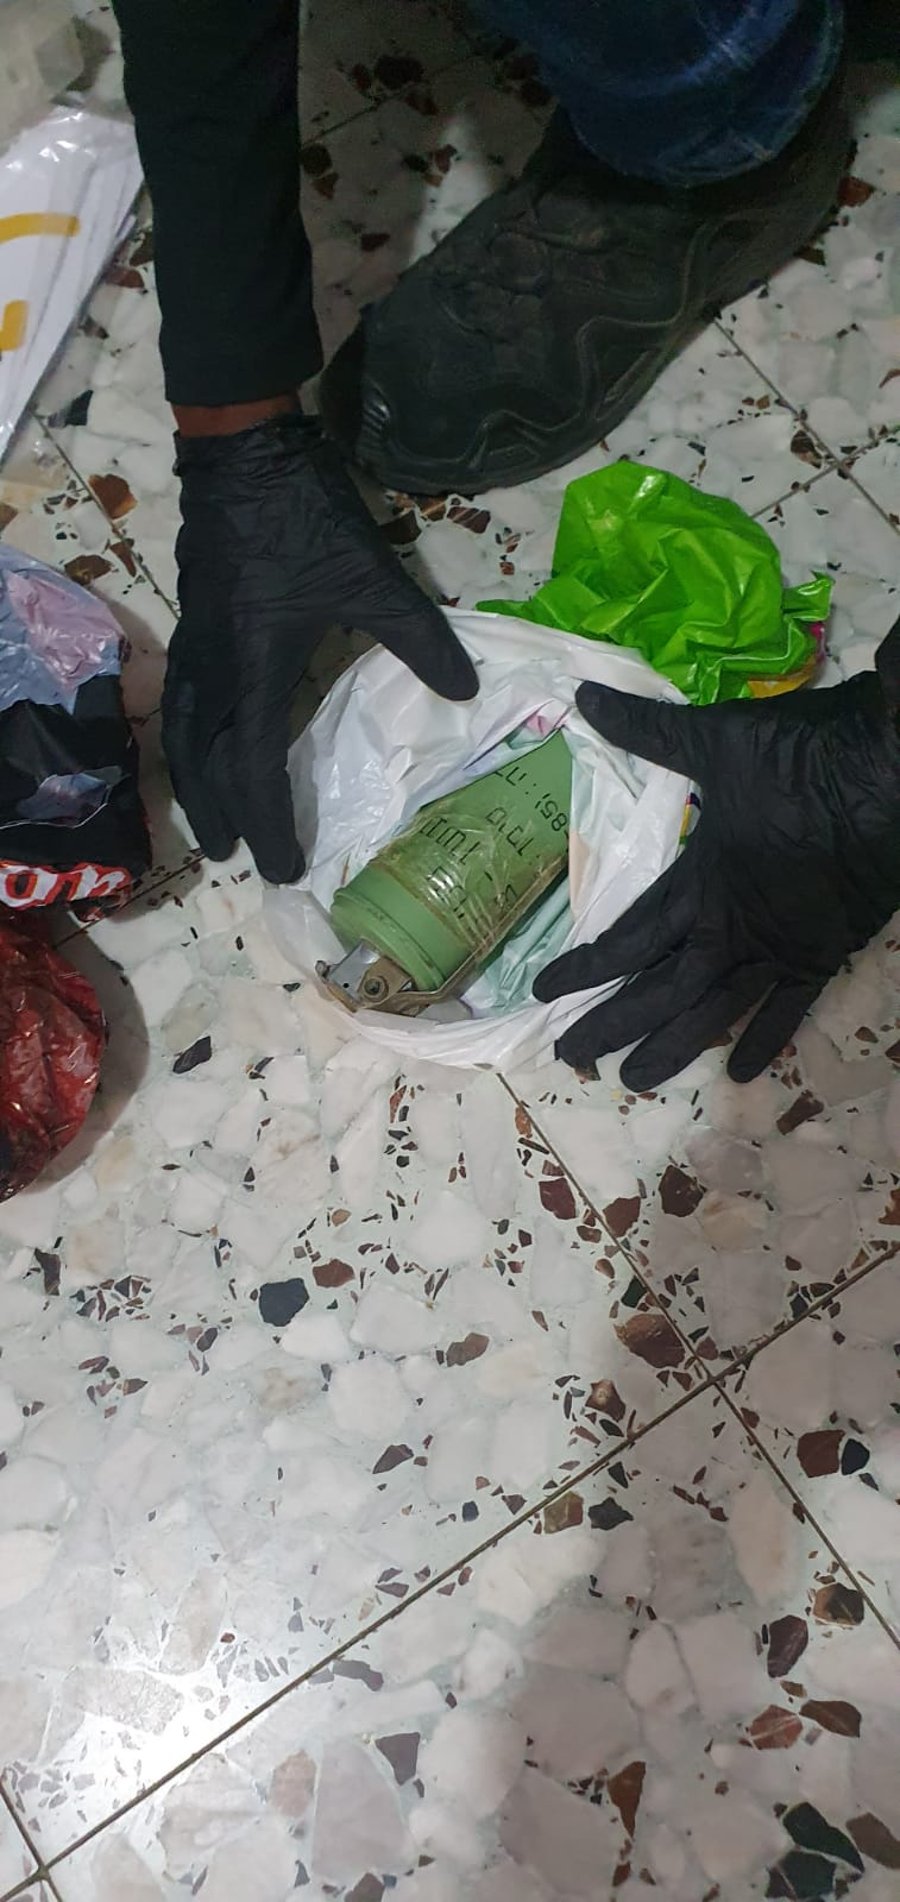 12 חשודים נעצרו בפשיטה משטרתית לאיתור אמל"ח